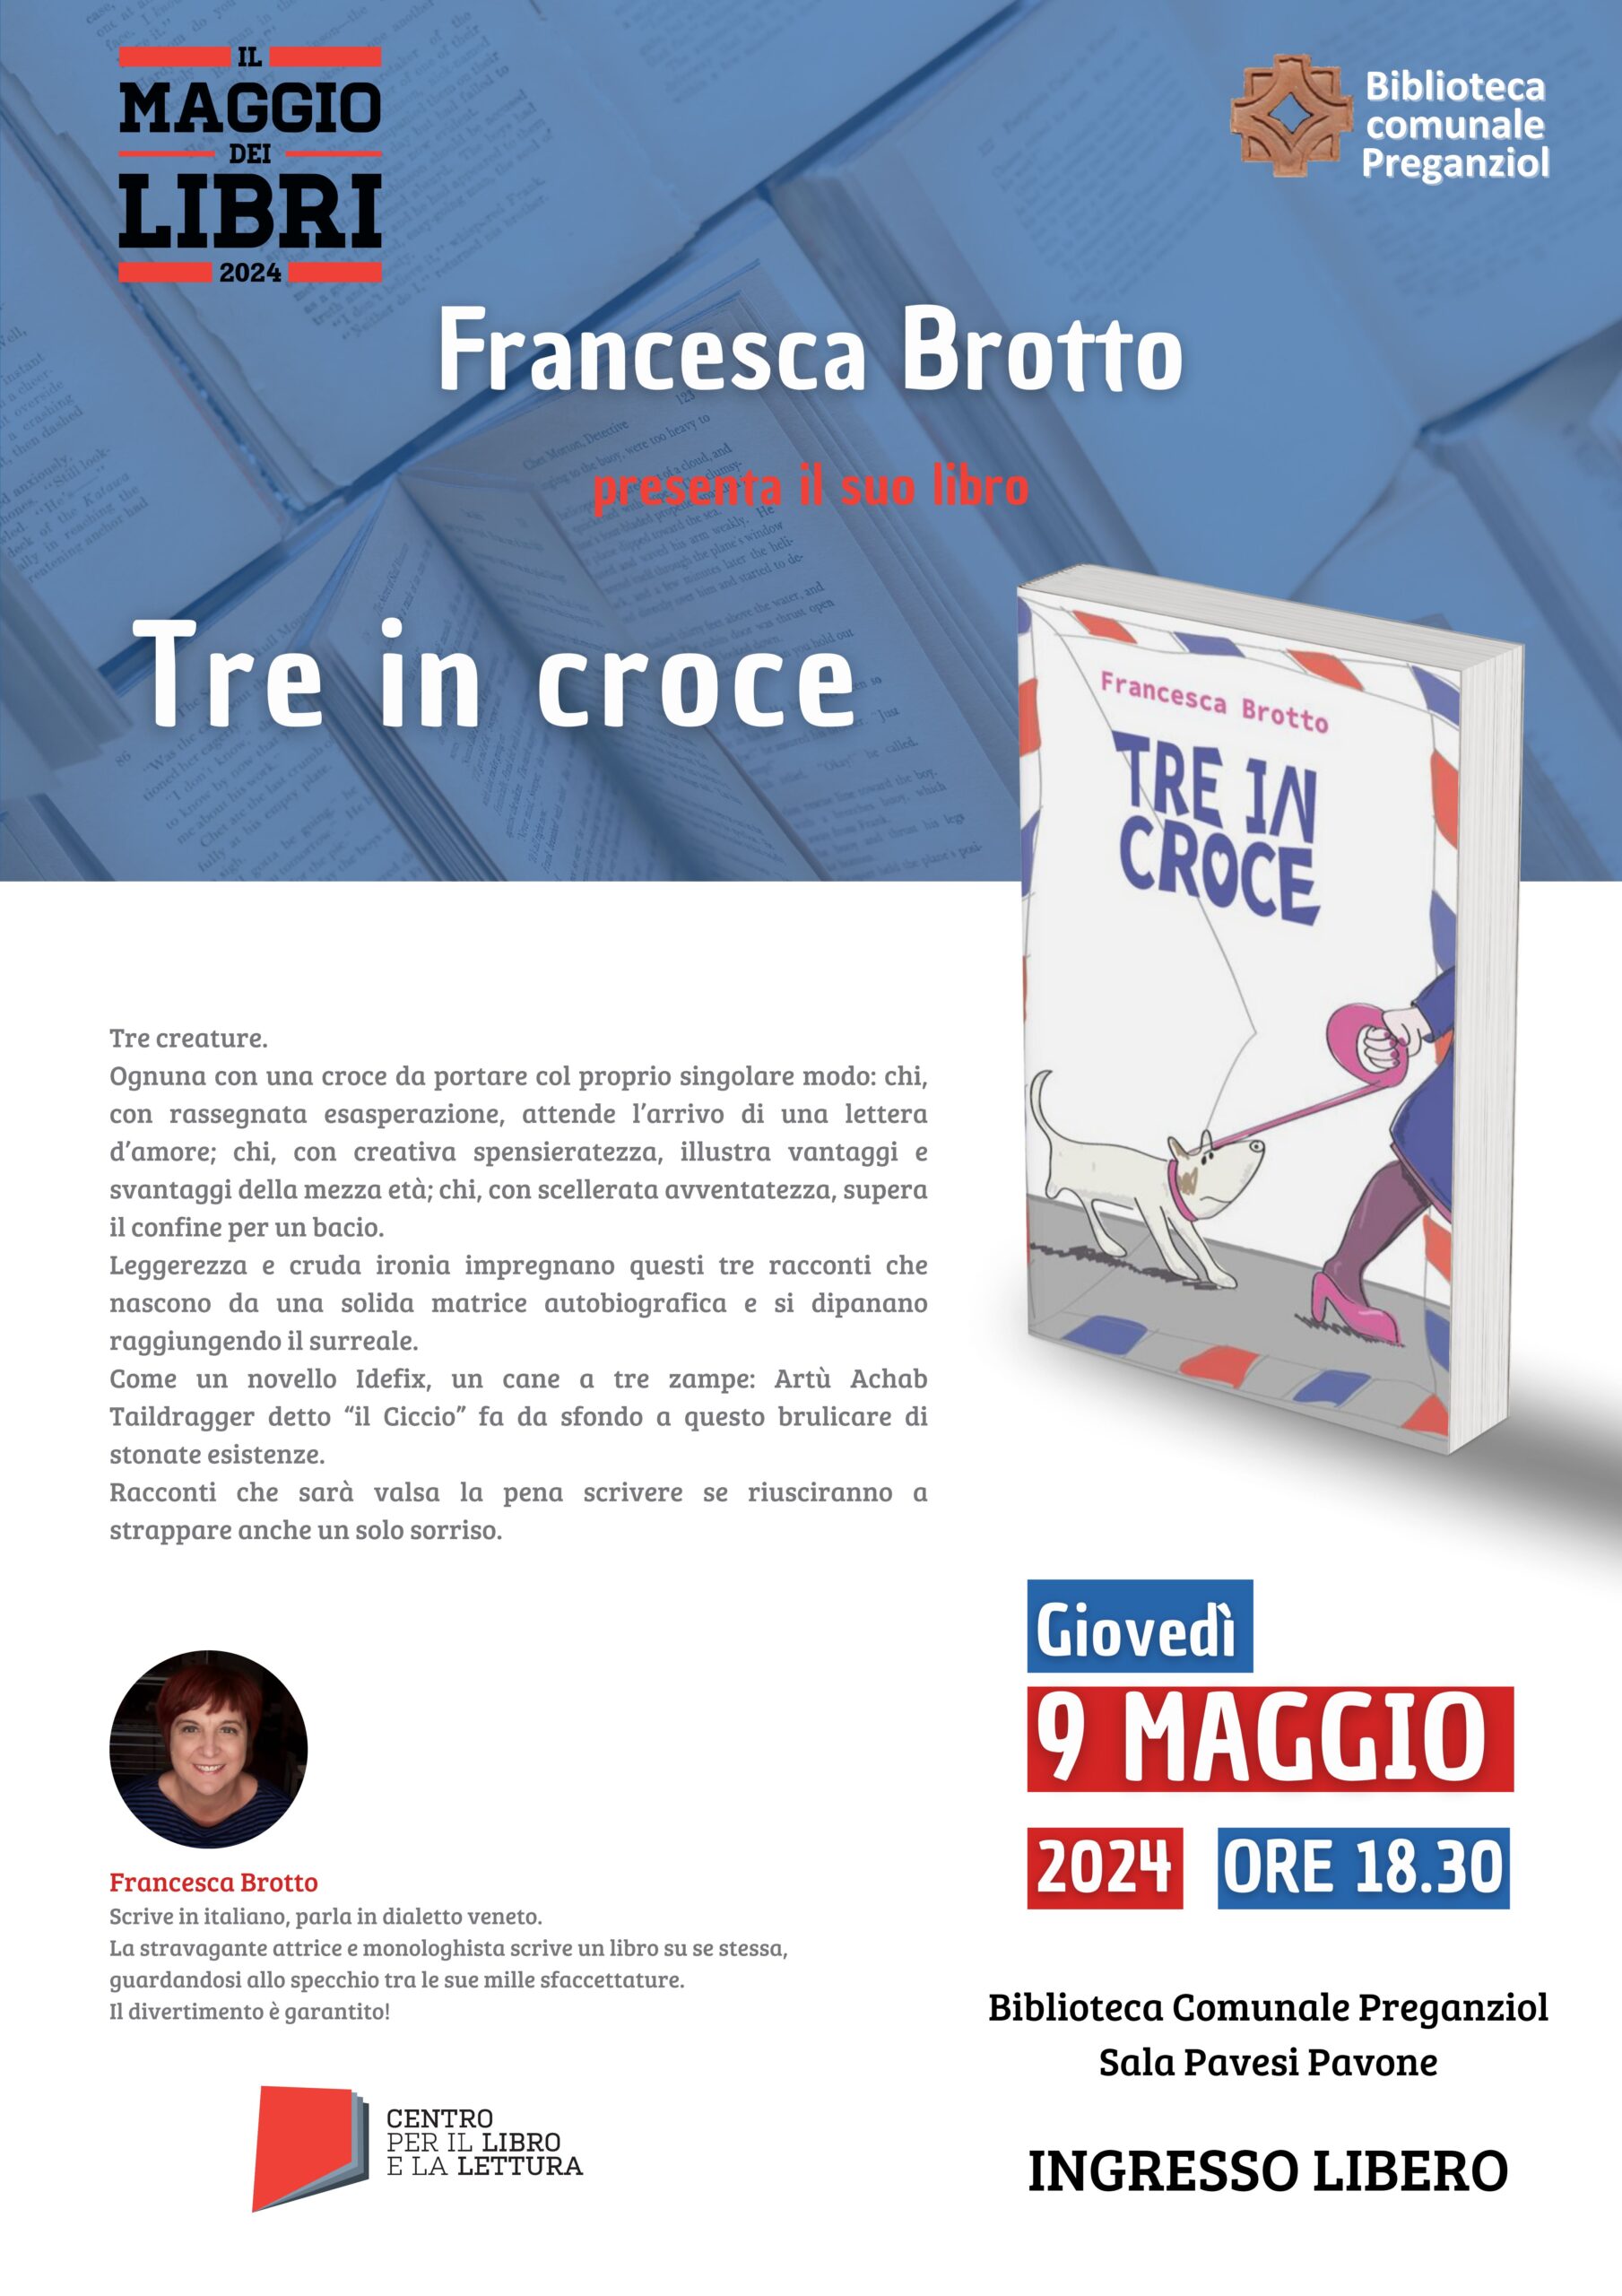 Francesca Brotto presenta “Tre croci”, giovedì 9 maggio alle 18.30